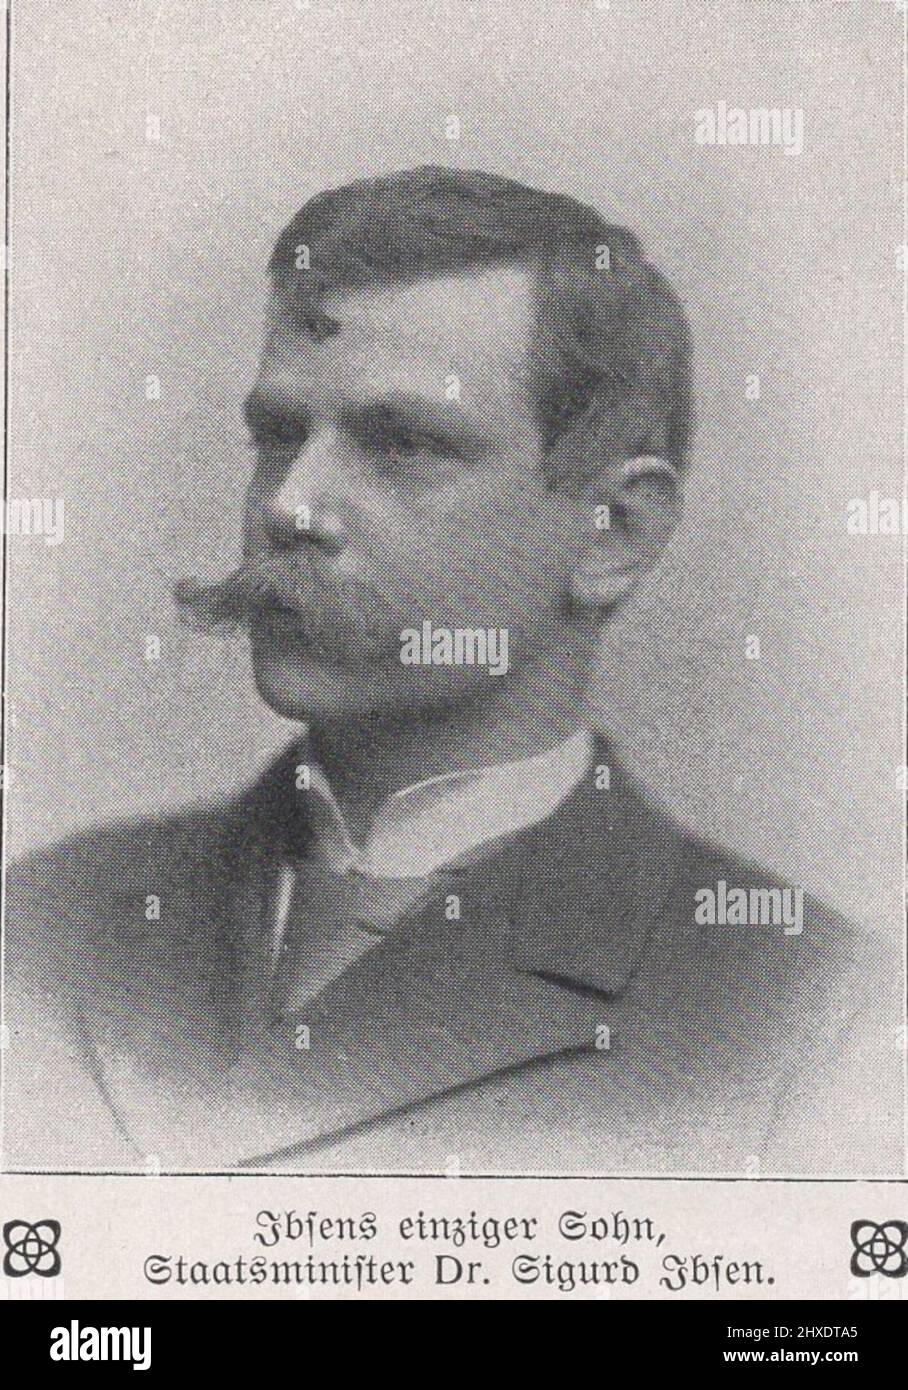 Ibsens einziger sohn.Staatsminister Dr Sigurd Ibsen. / Ibsen's only son.Minister of State  Dr Sigurd Ibsen. ( Prime minister ) Stock Photo